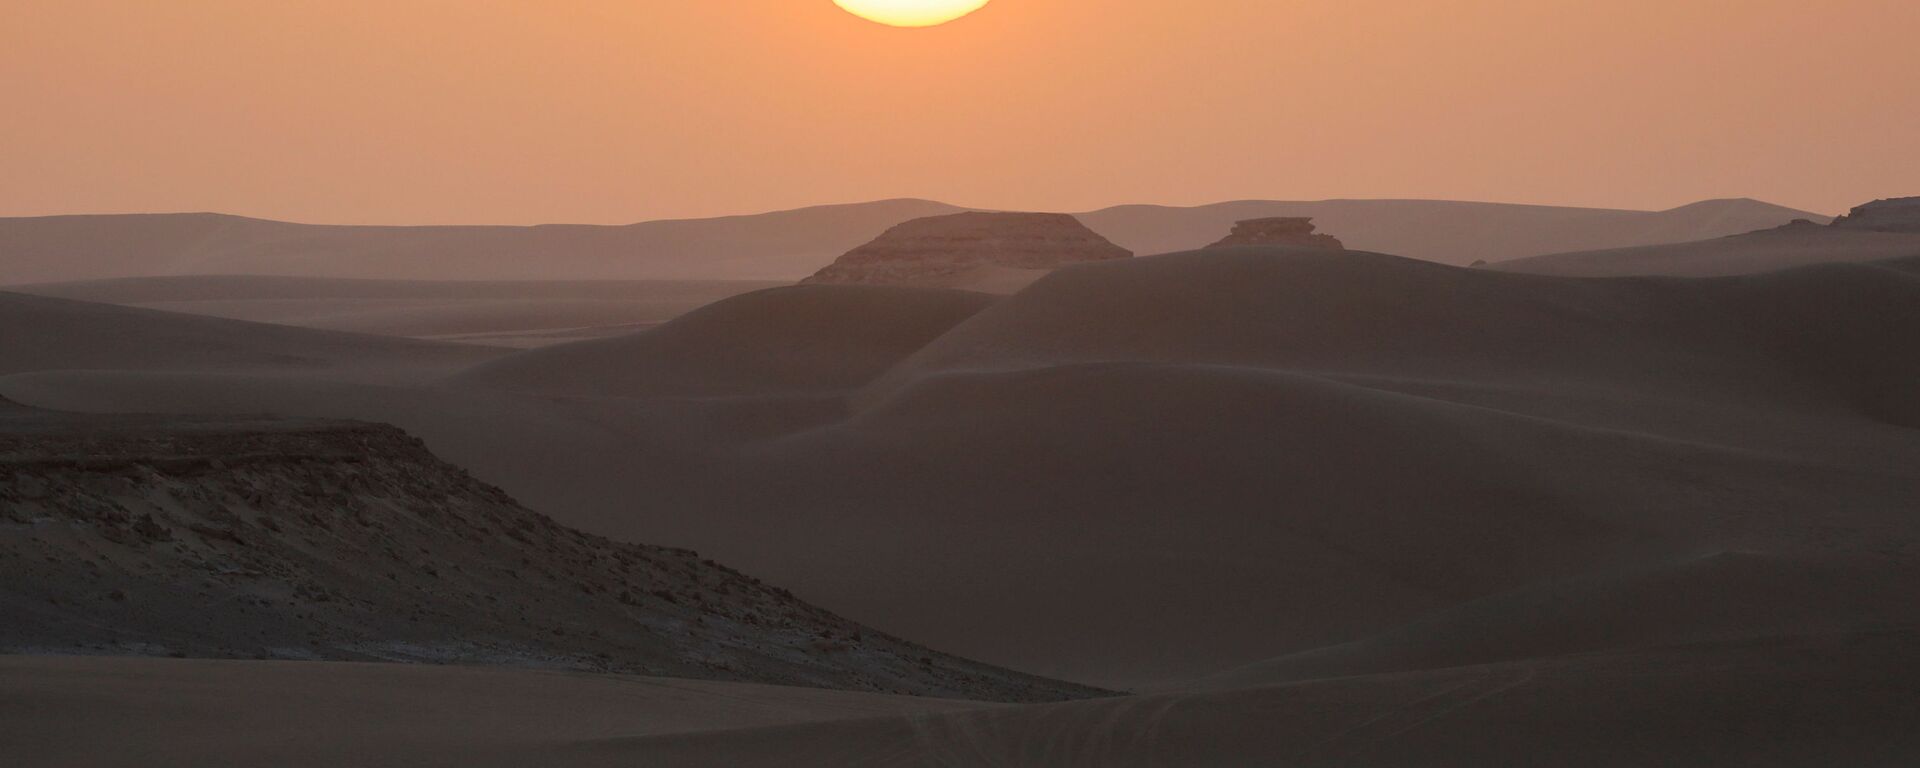 واحة سيوة، صحراء مصر الغربية 15 أكتوبر 2020 - سبوتنيك عربي, 1920, 04.04.2021